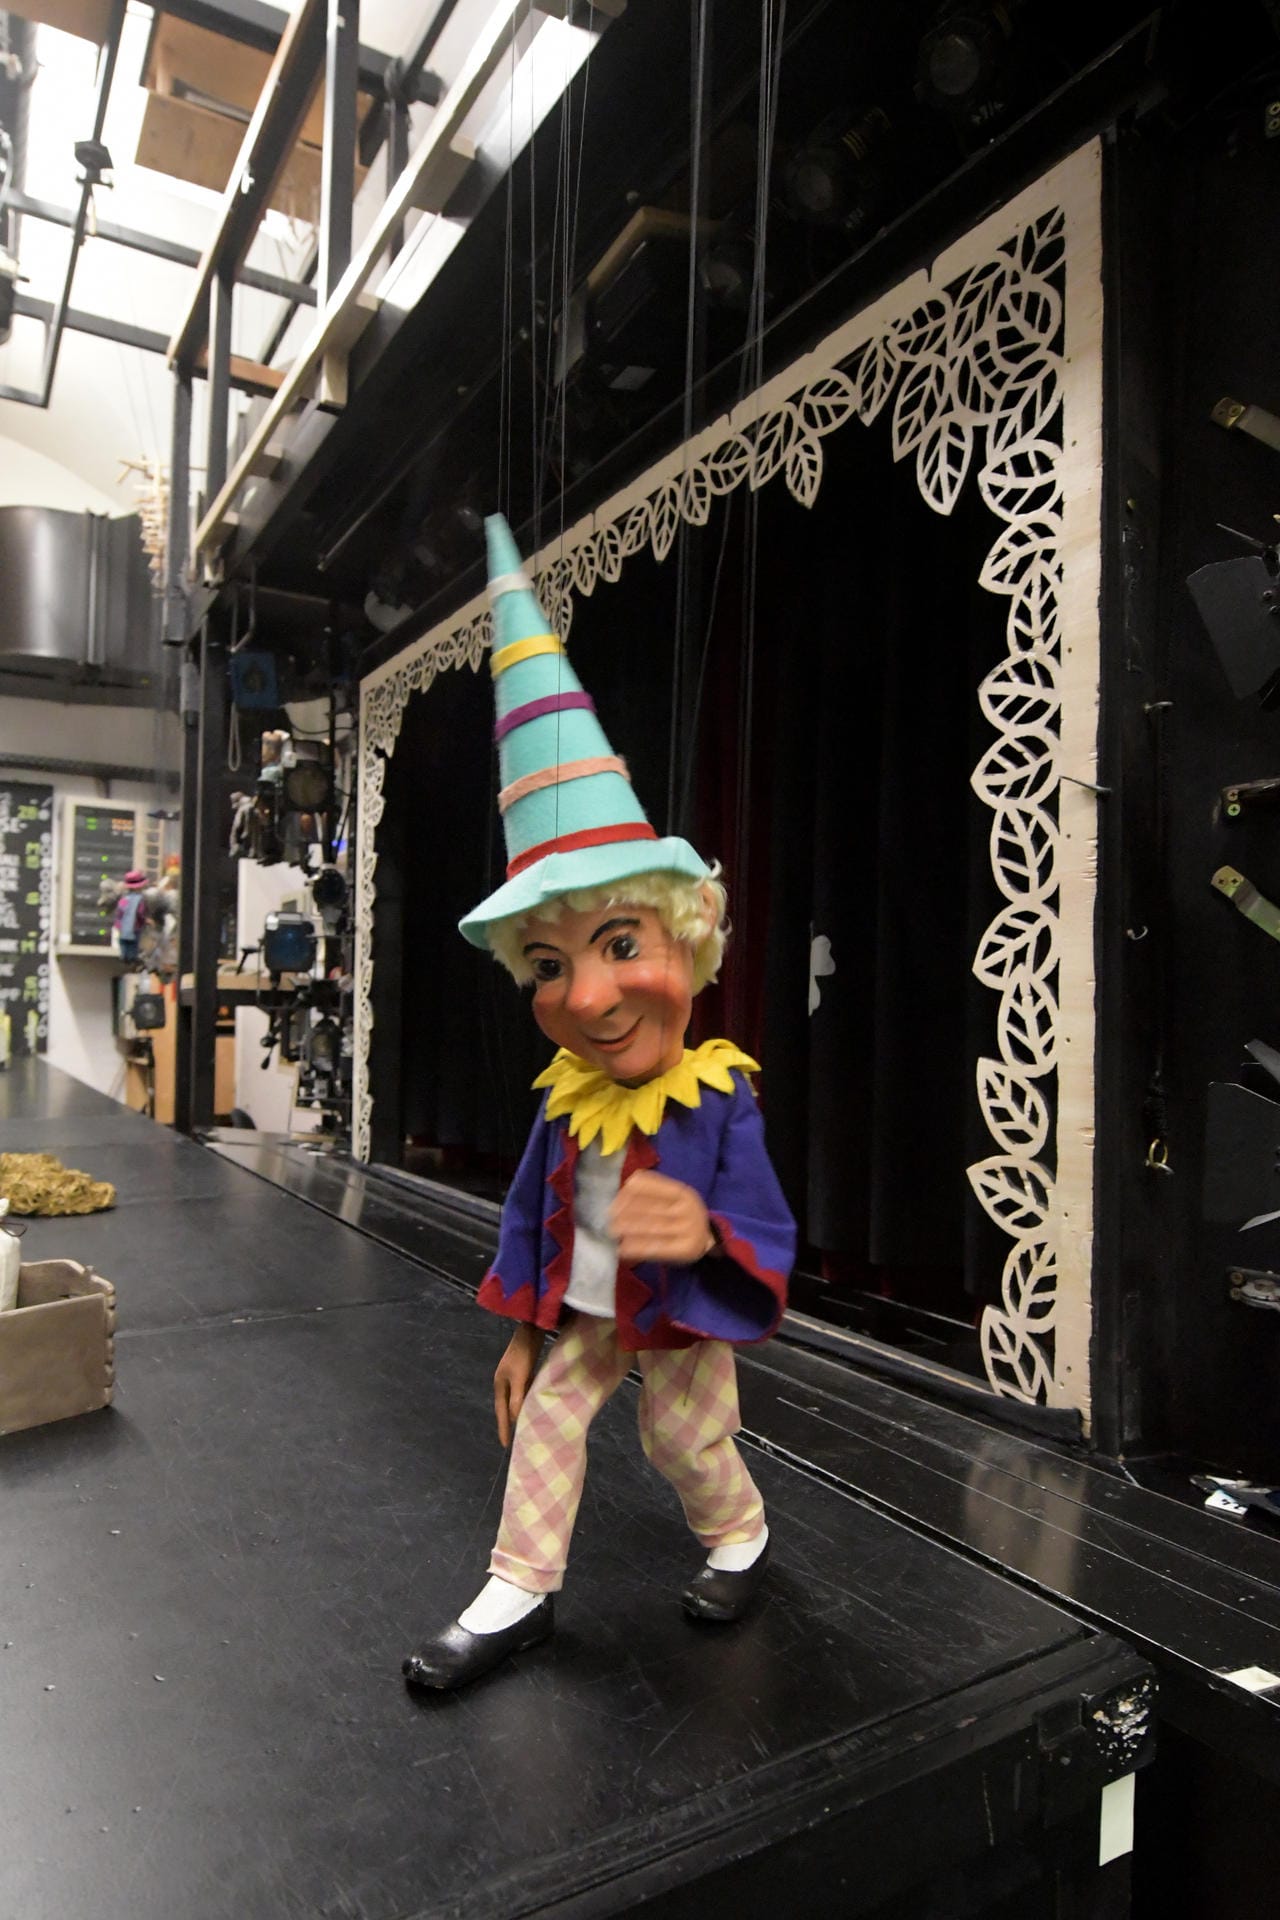 So sieht die Marionette Kasperl dann auf der Bühne aus.